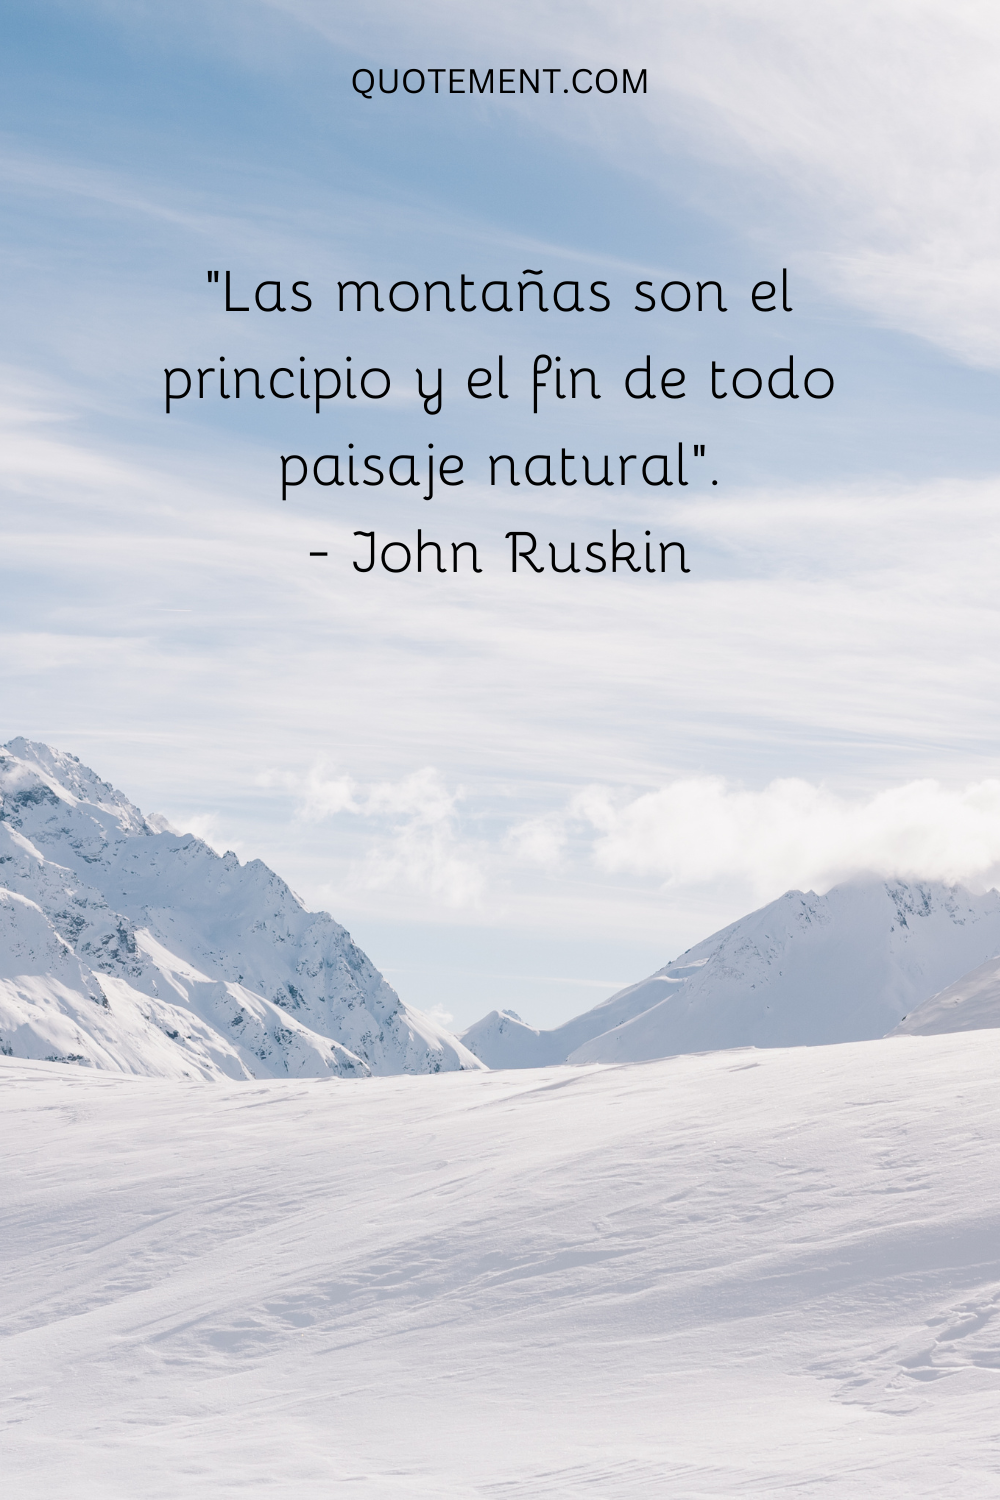 "Las montañas son el principio y el fin de todo paisaje natural". - John Ruskin